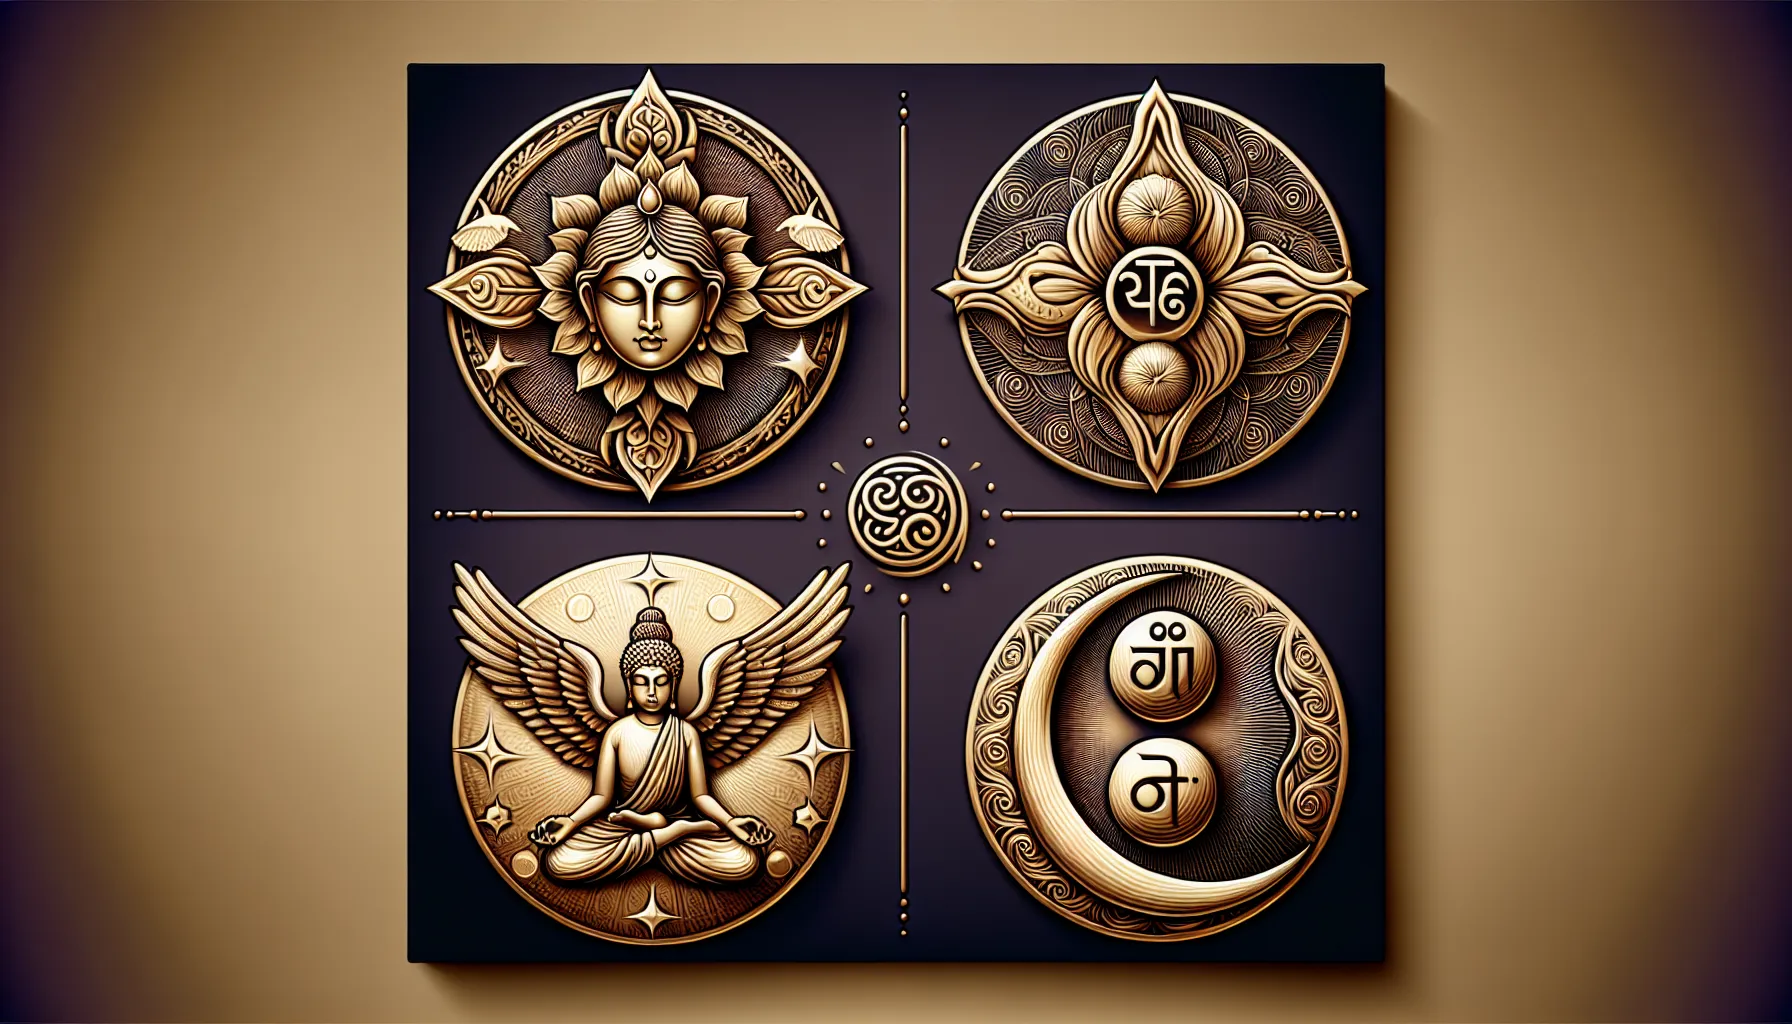 Cuatro símbolos espirituales que representan la armonía y el equilibrio en la vida.